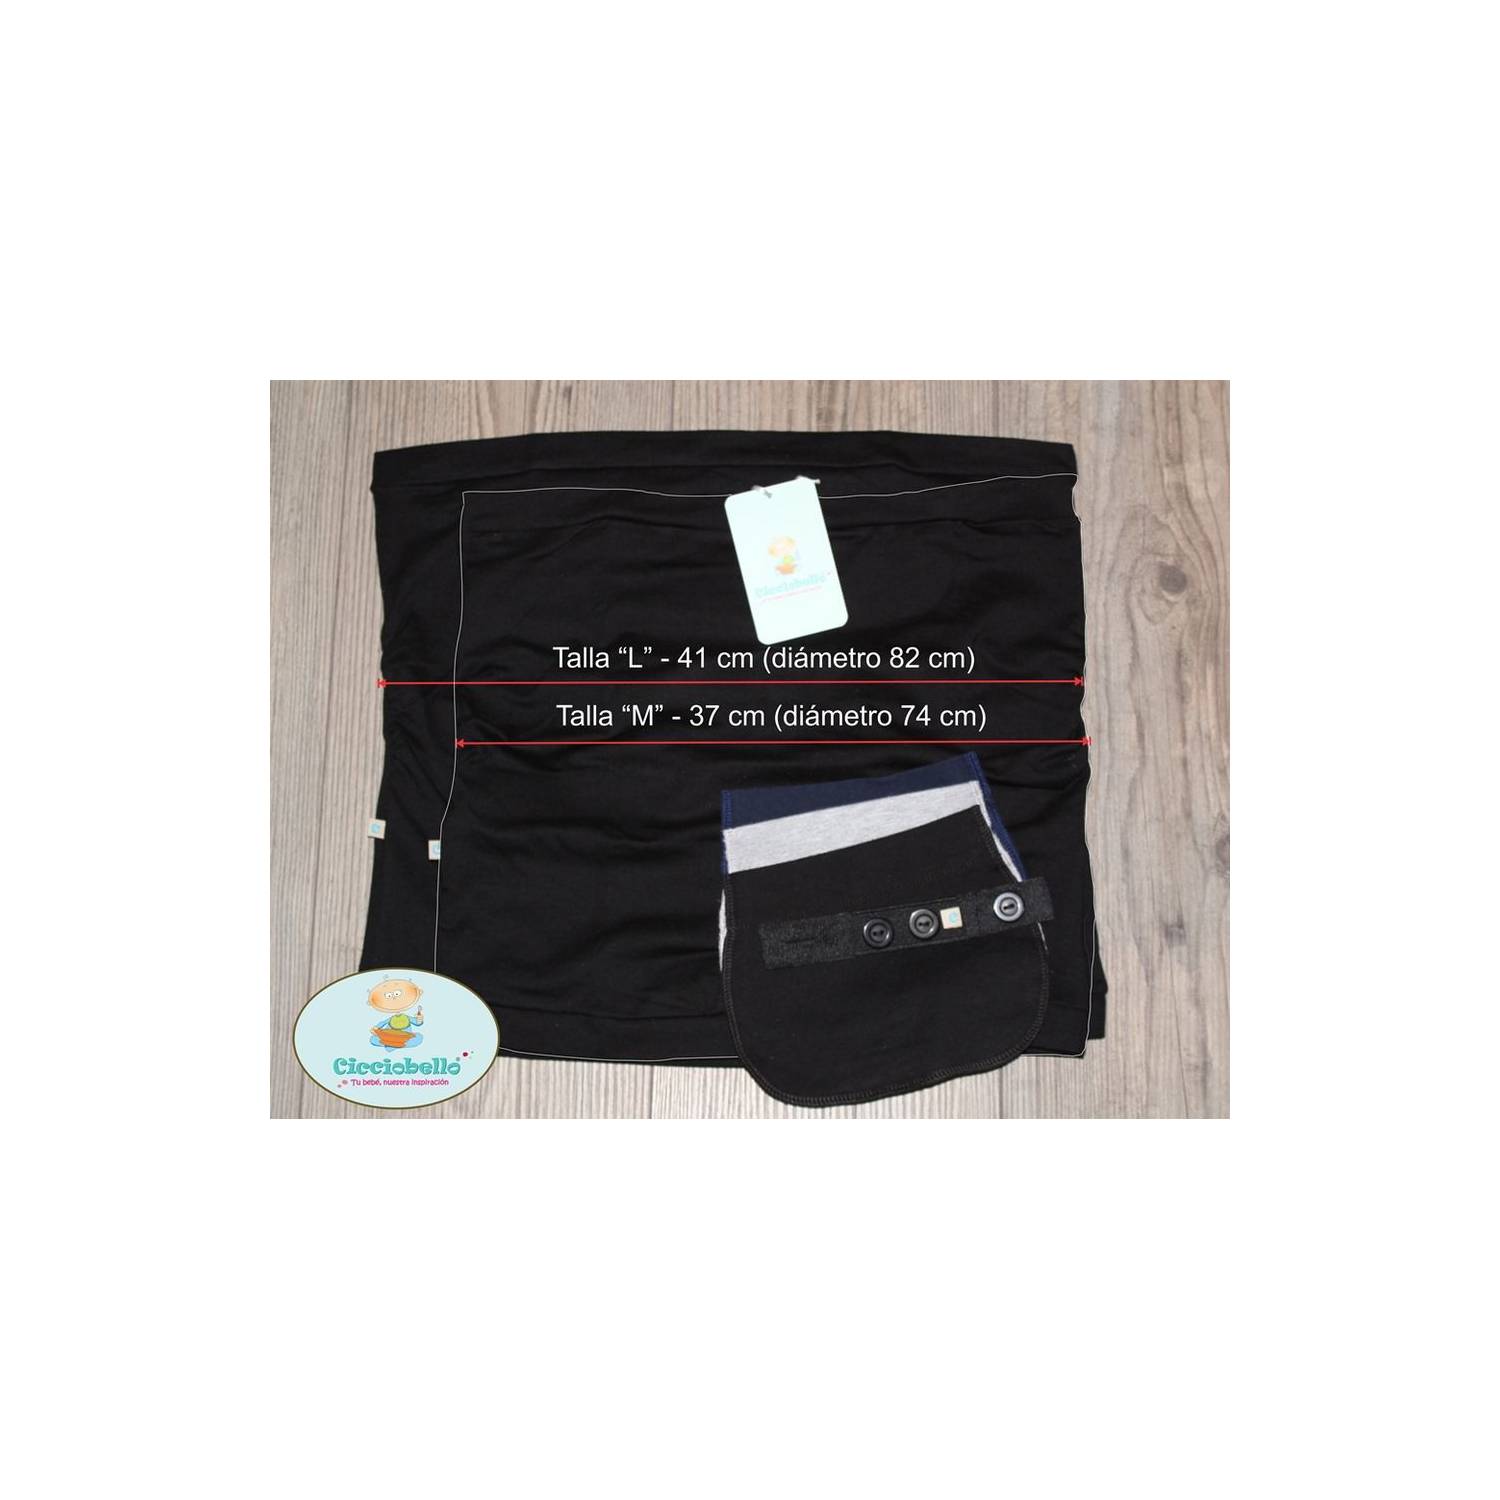  WILLBOND Paquete de 6 pantalones de maternidad, extensores de  cintura ajustables, extensor de cintura para embarazo, pantalones elásticos  para embarazo, aproximadamente 8.1 x 6.9 pulgadas, gris, como : Ropa,  Zapatos y Joyería